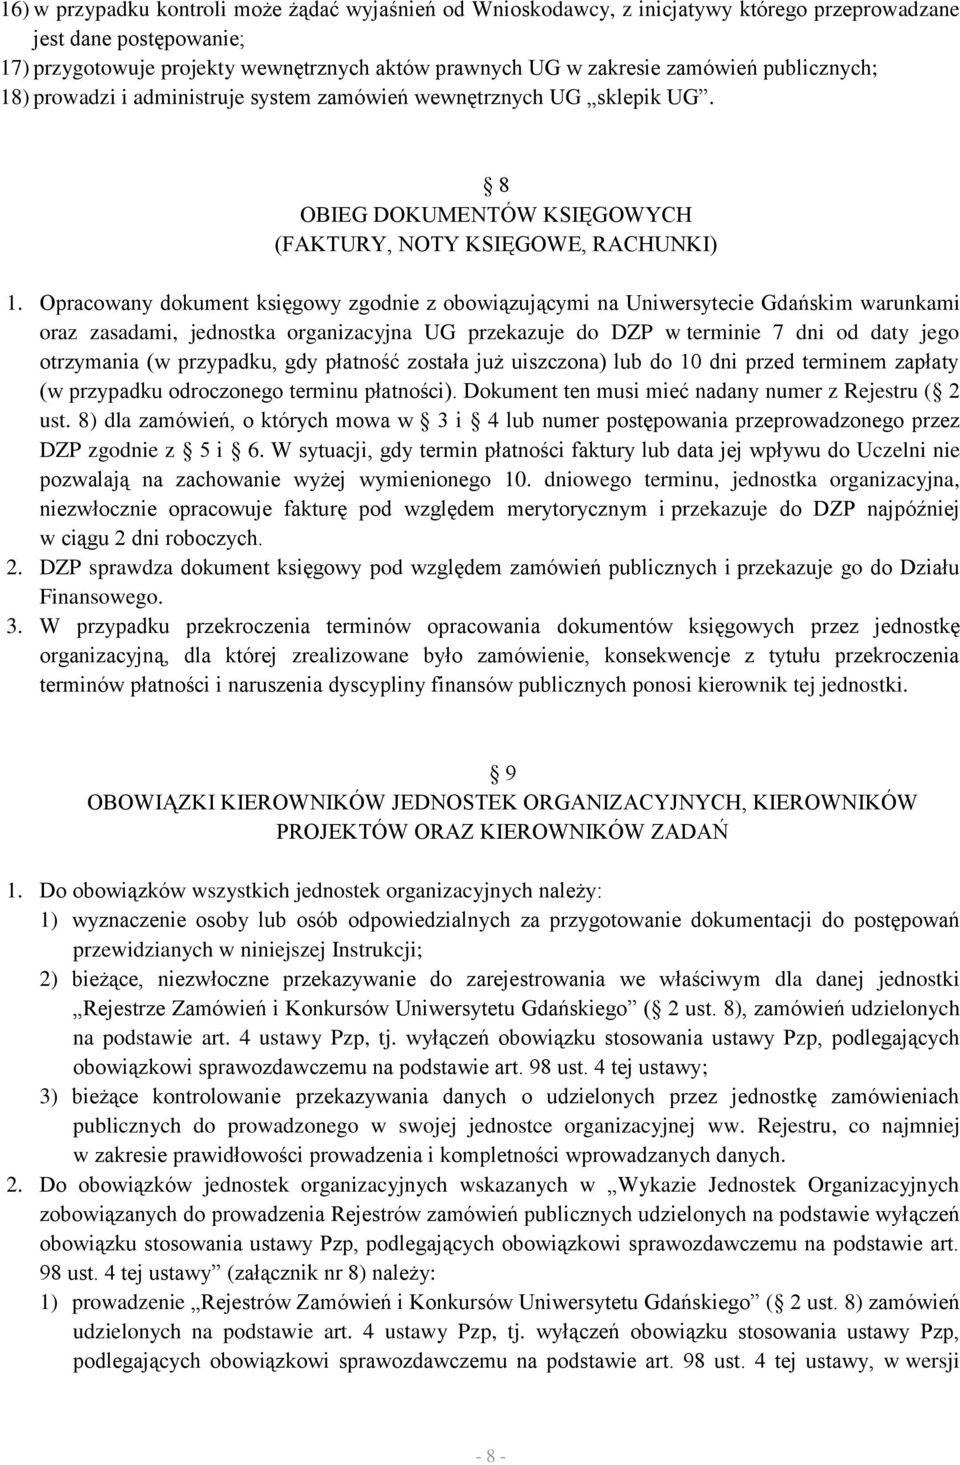 Opracowany dokument księgowy zgodnie z obowiązującymi na Uniwersytecie Gdańskim warunkami oraz zasadami, jednostka organizacyjna UG przekazuje do DZP w terminie 7 dni od daty jego otrzymania (w